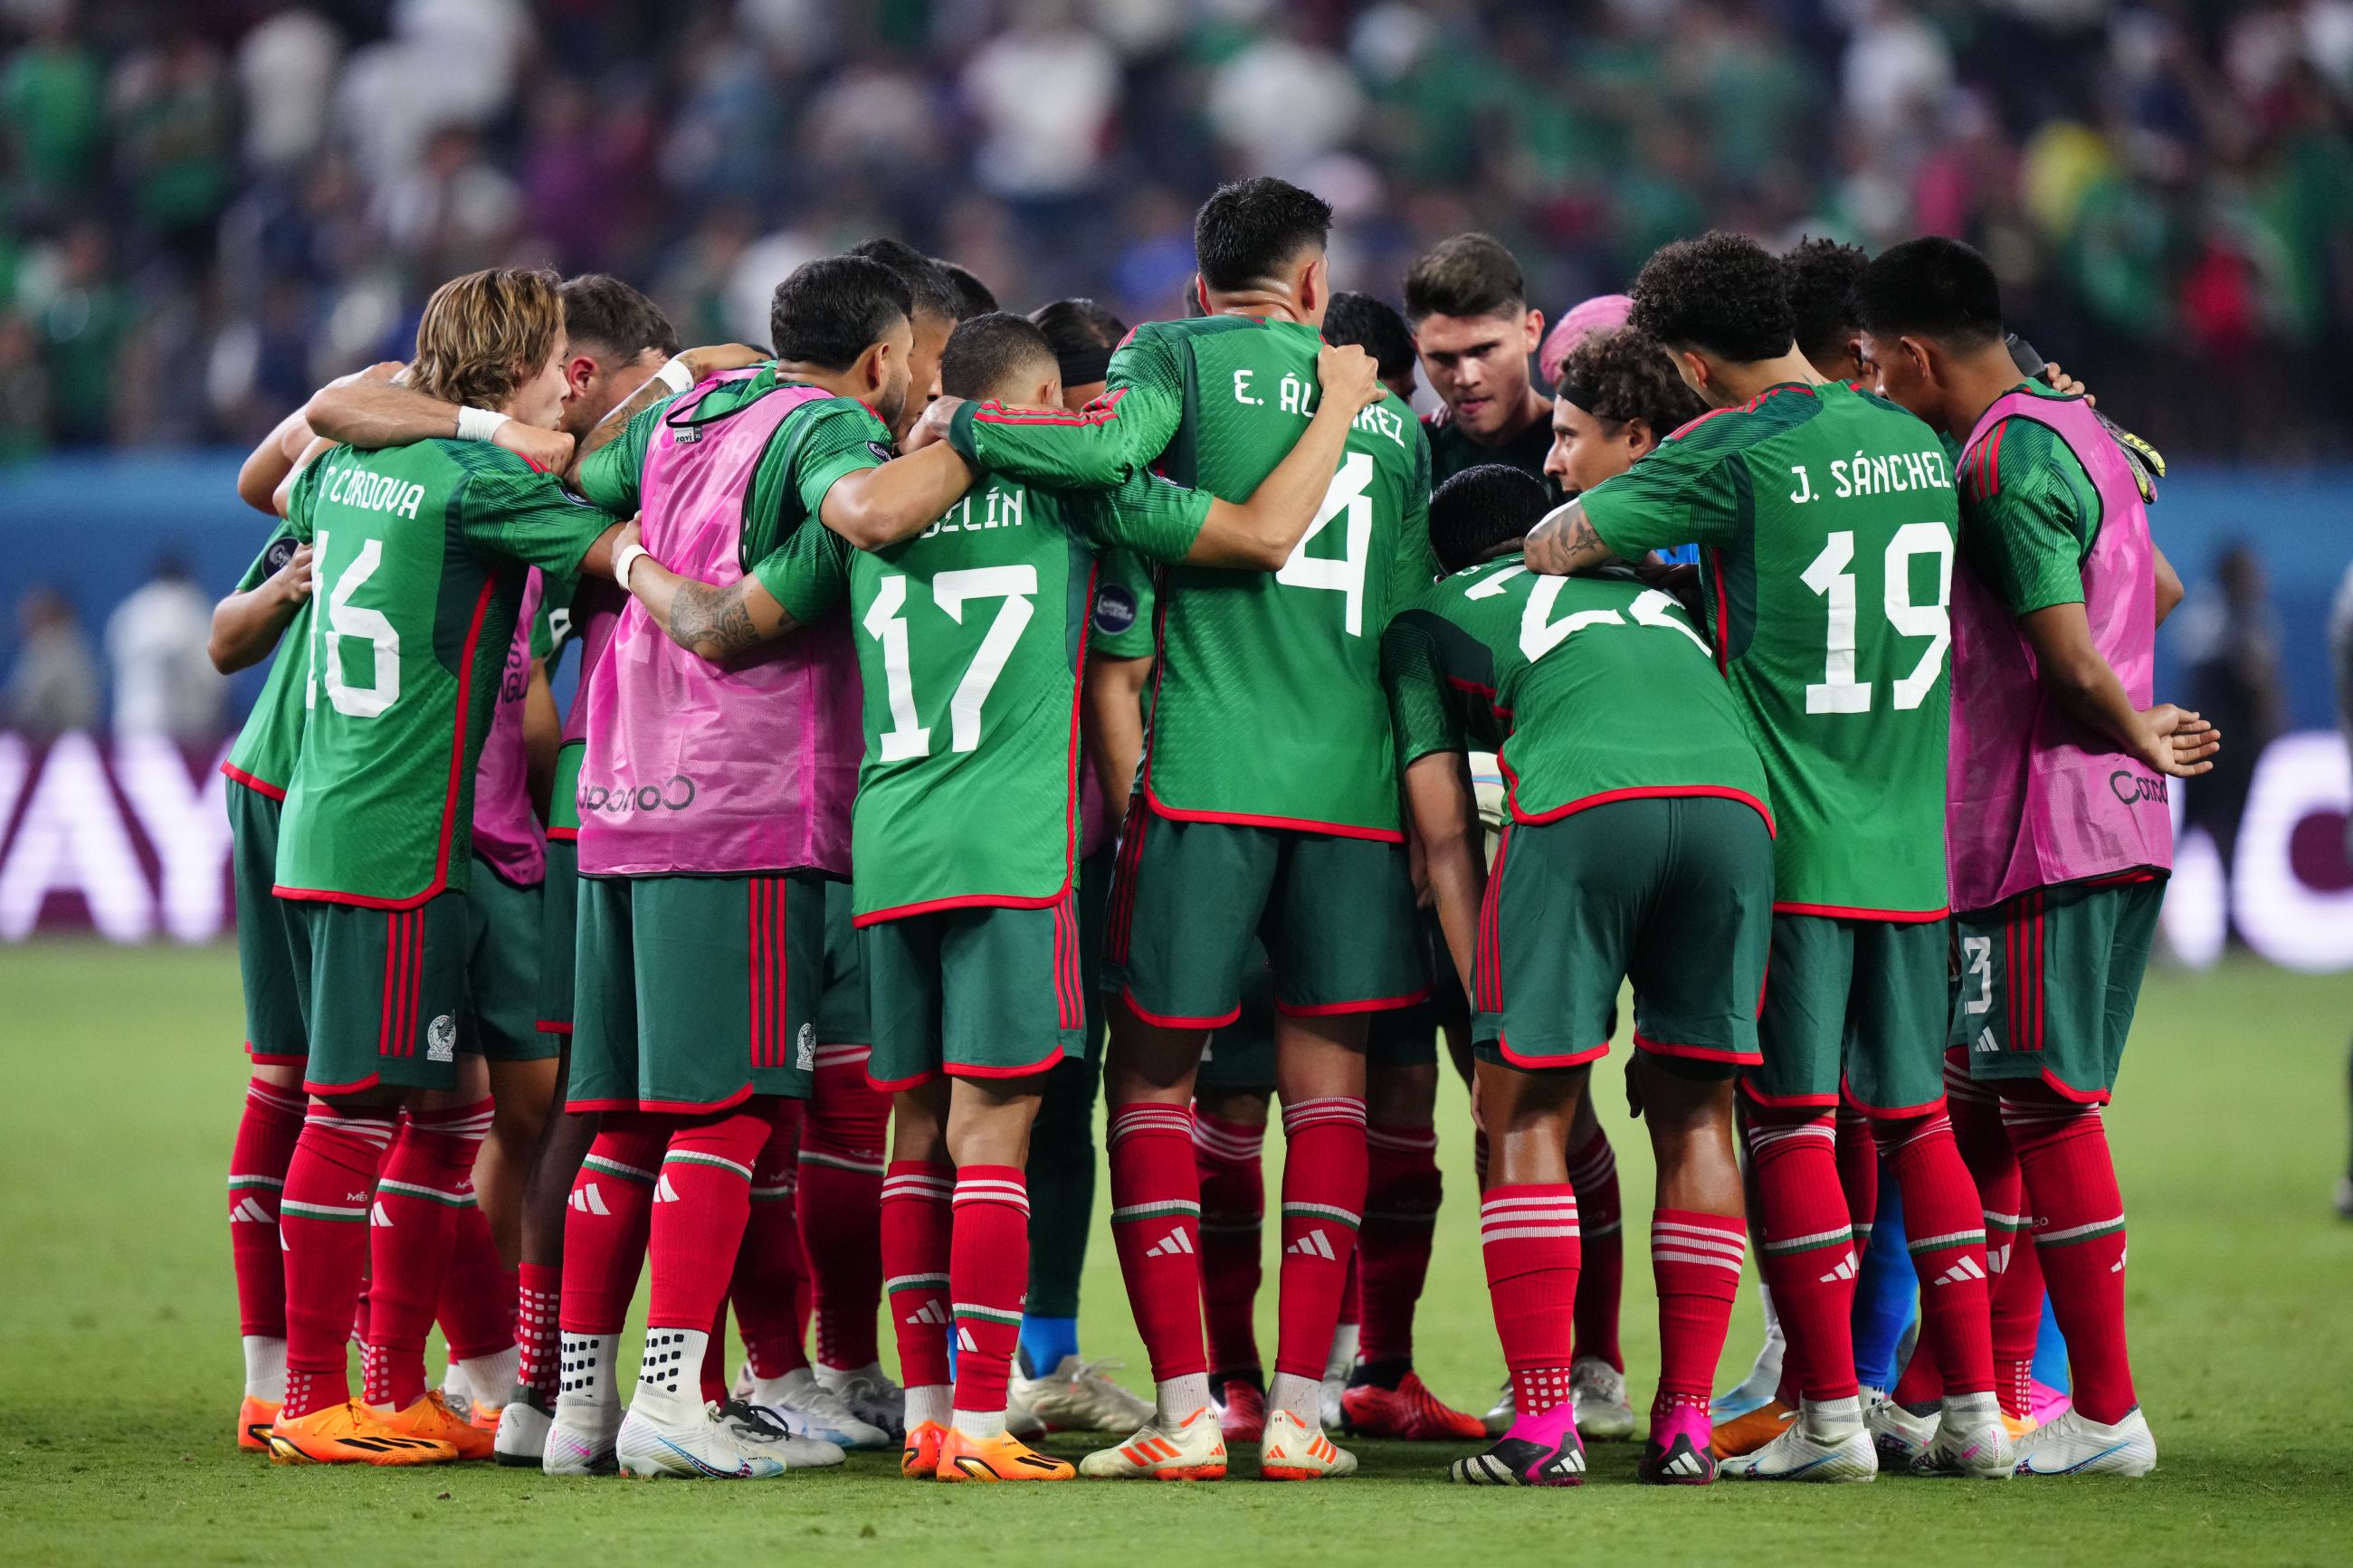 Cuándo juega la Selección Mexicana? El próximo partido del Tri vs. Panamá  por las semifinales de la Nations League